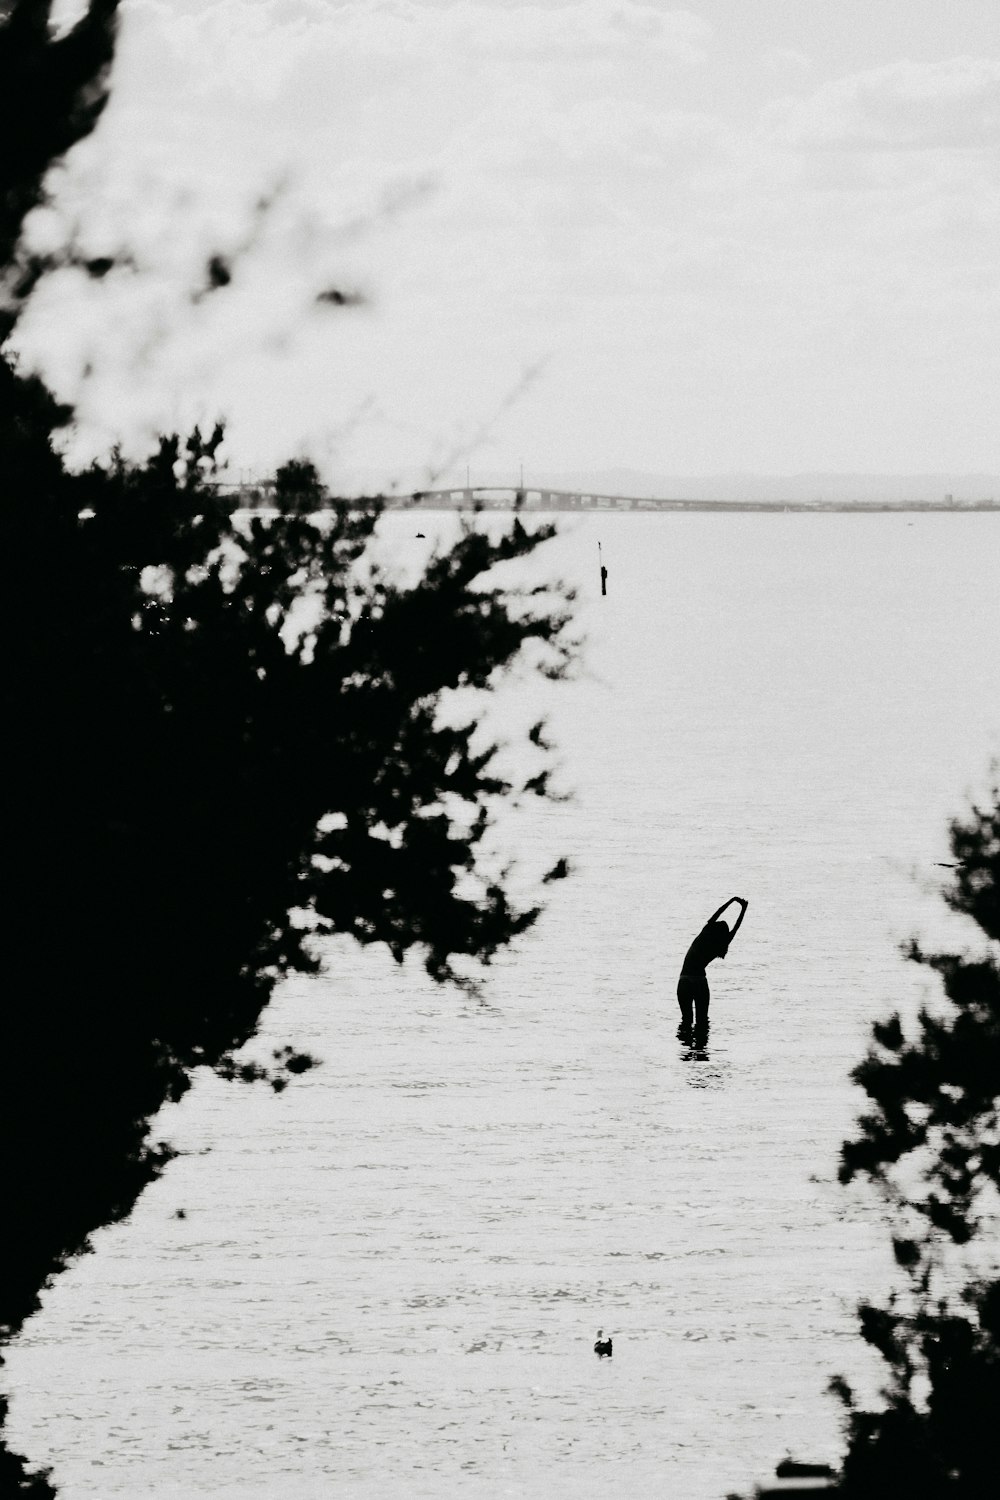 Una persona parada en un cuerpo de agua con árboles a su alrededor